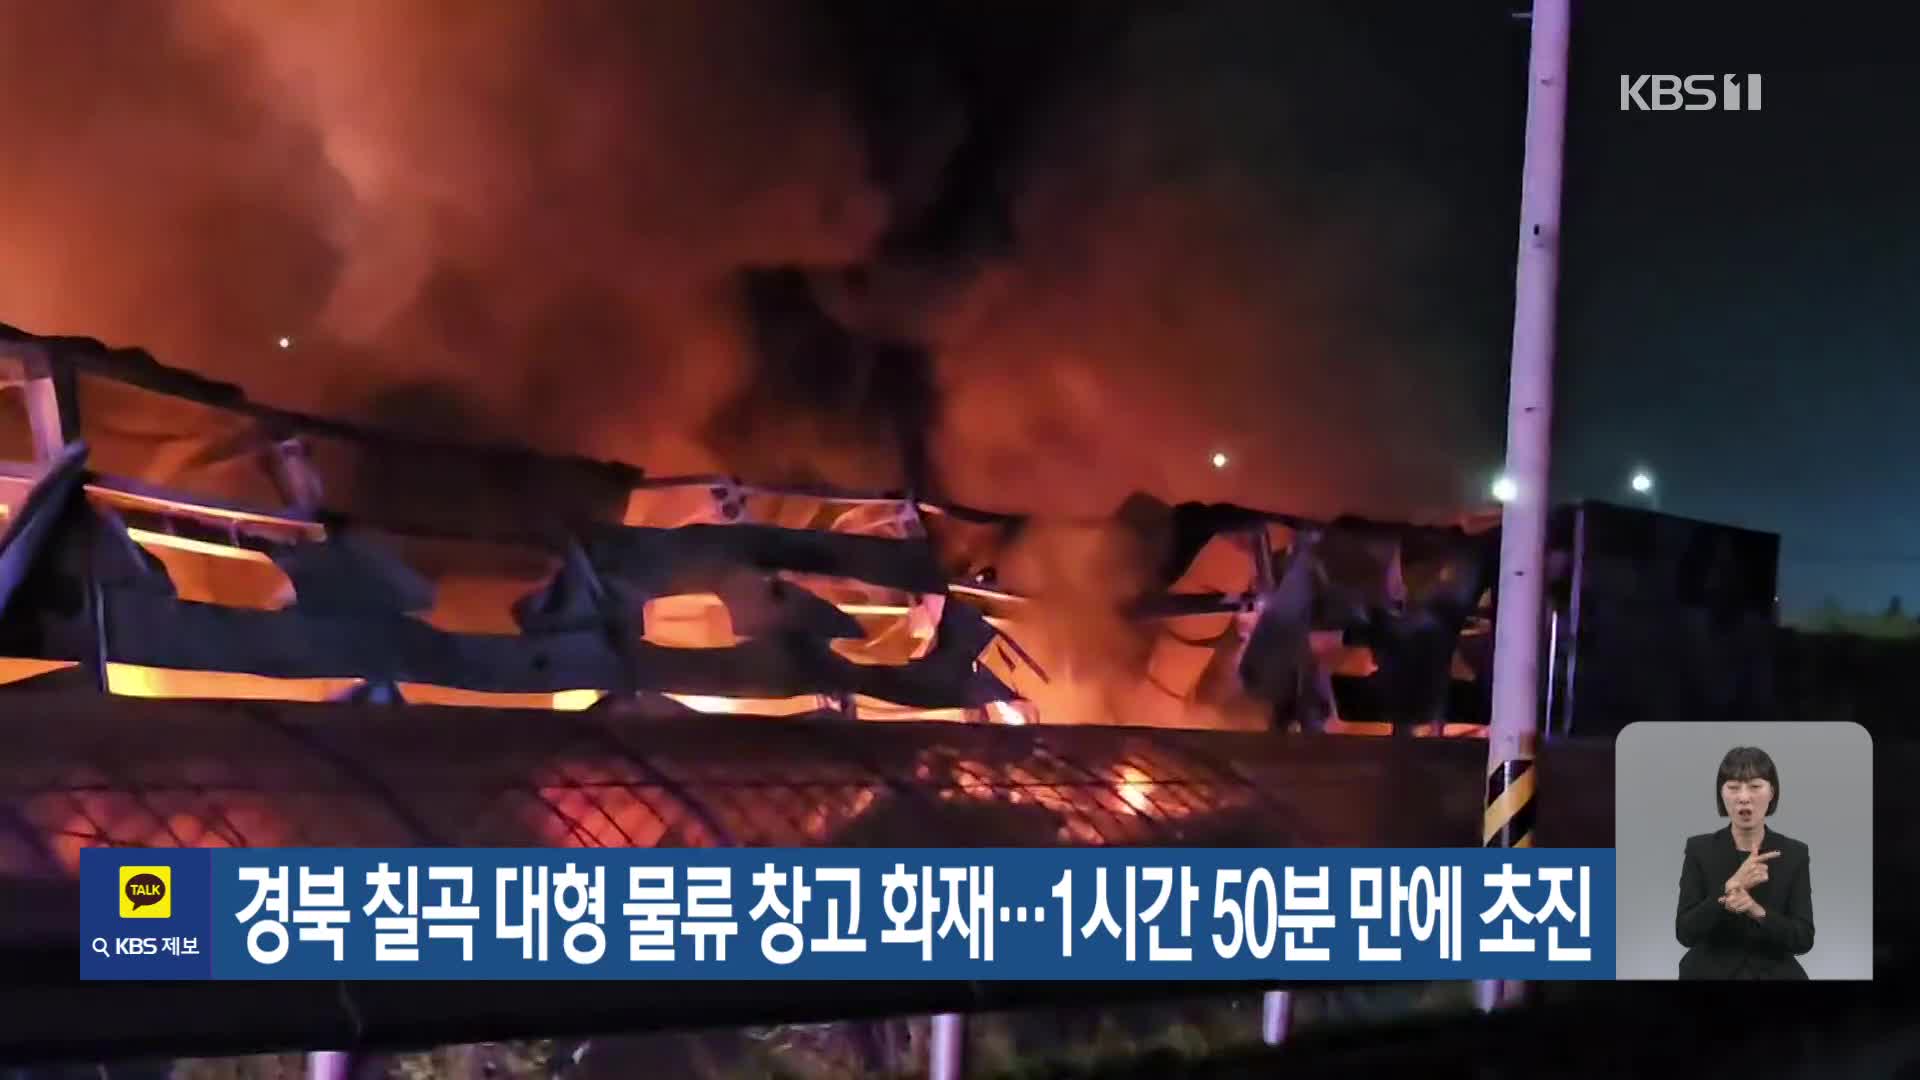 경북 칠곡 대형 물류 창고 화재…1시간 50분 만에 초진